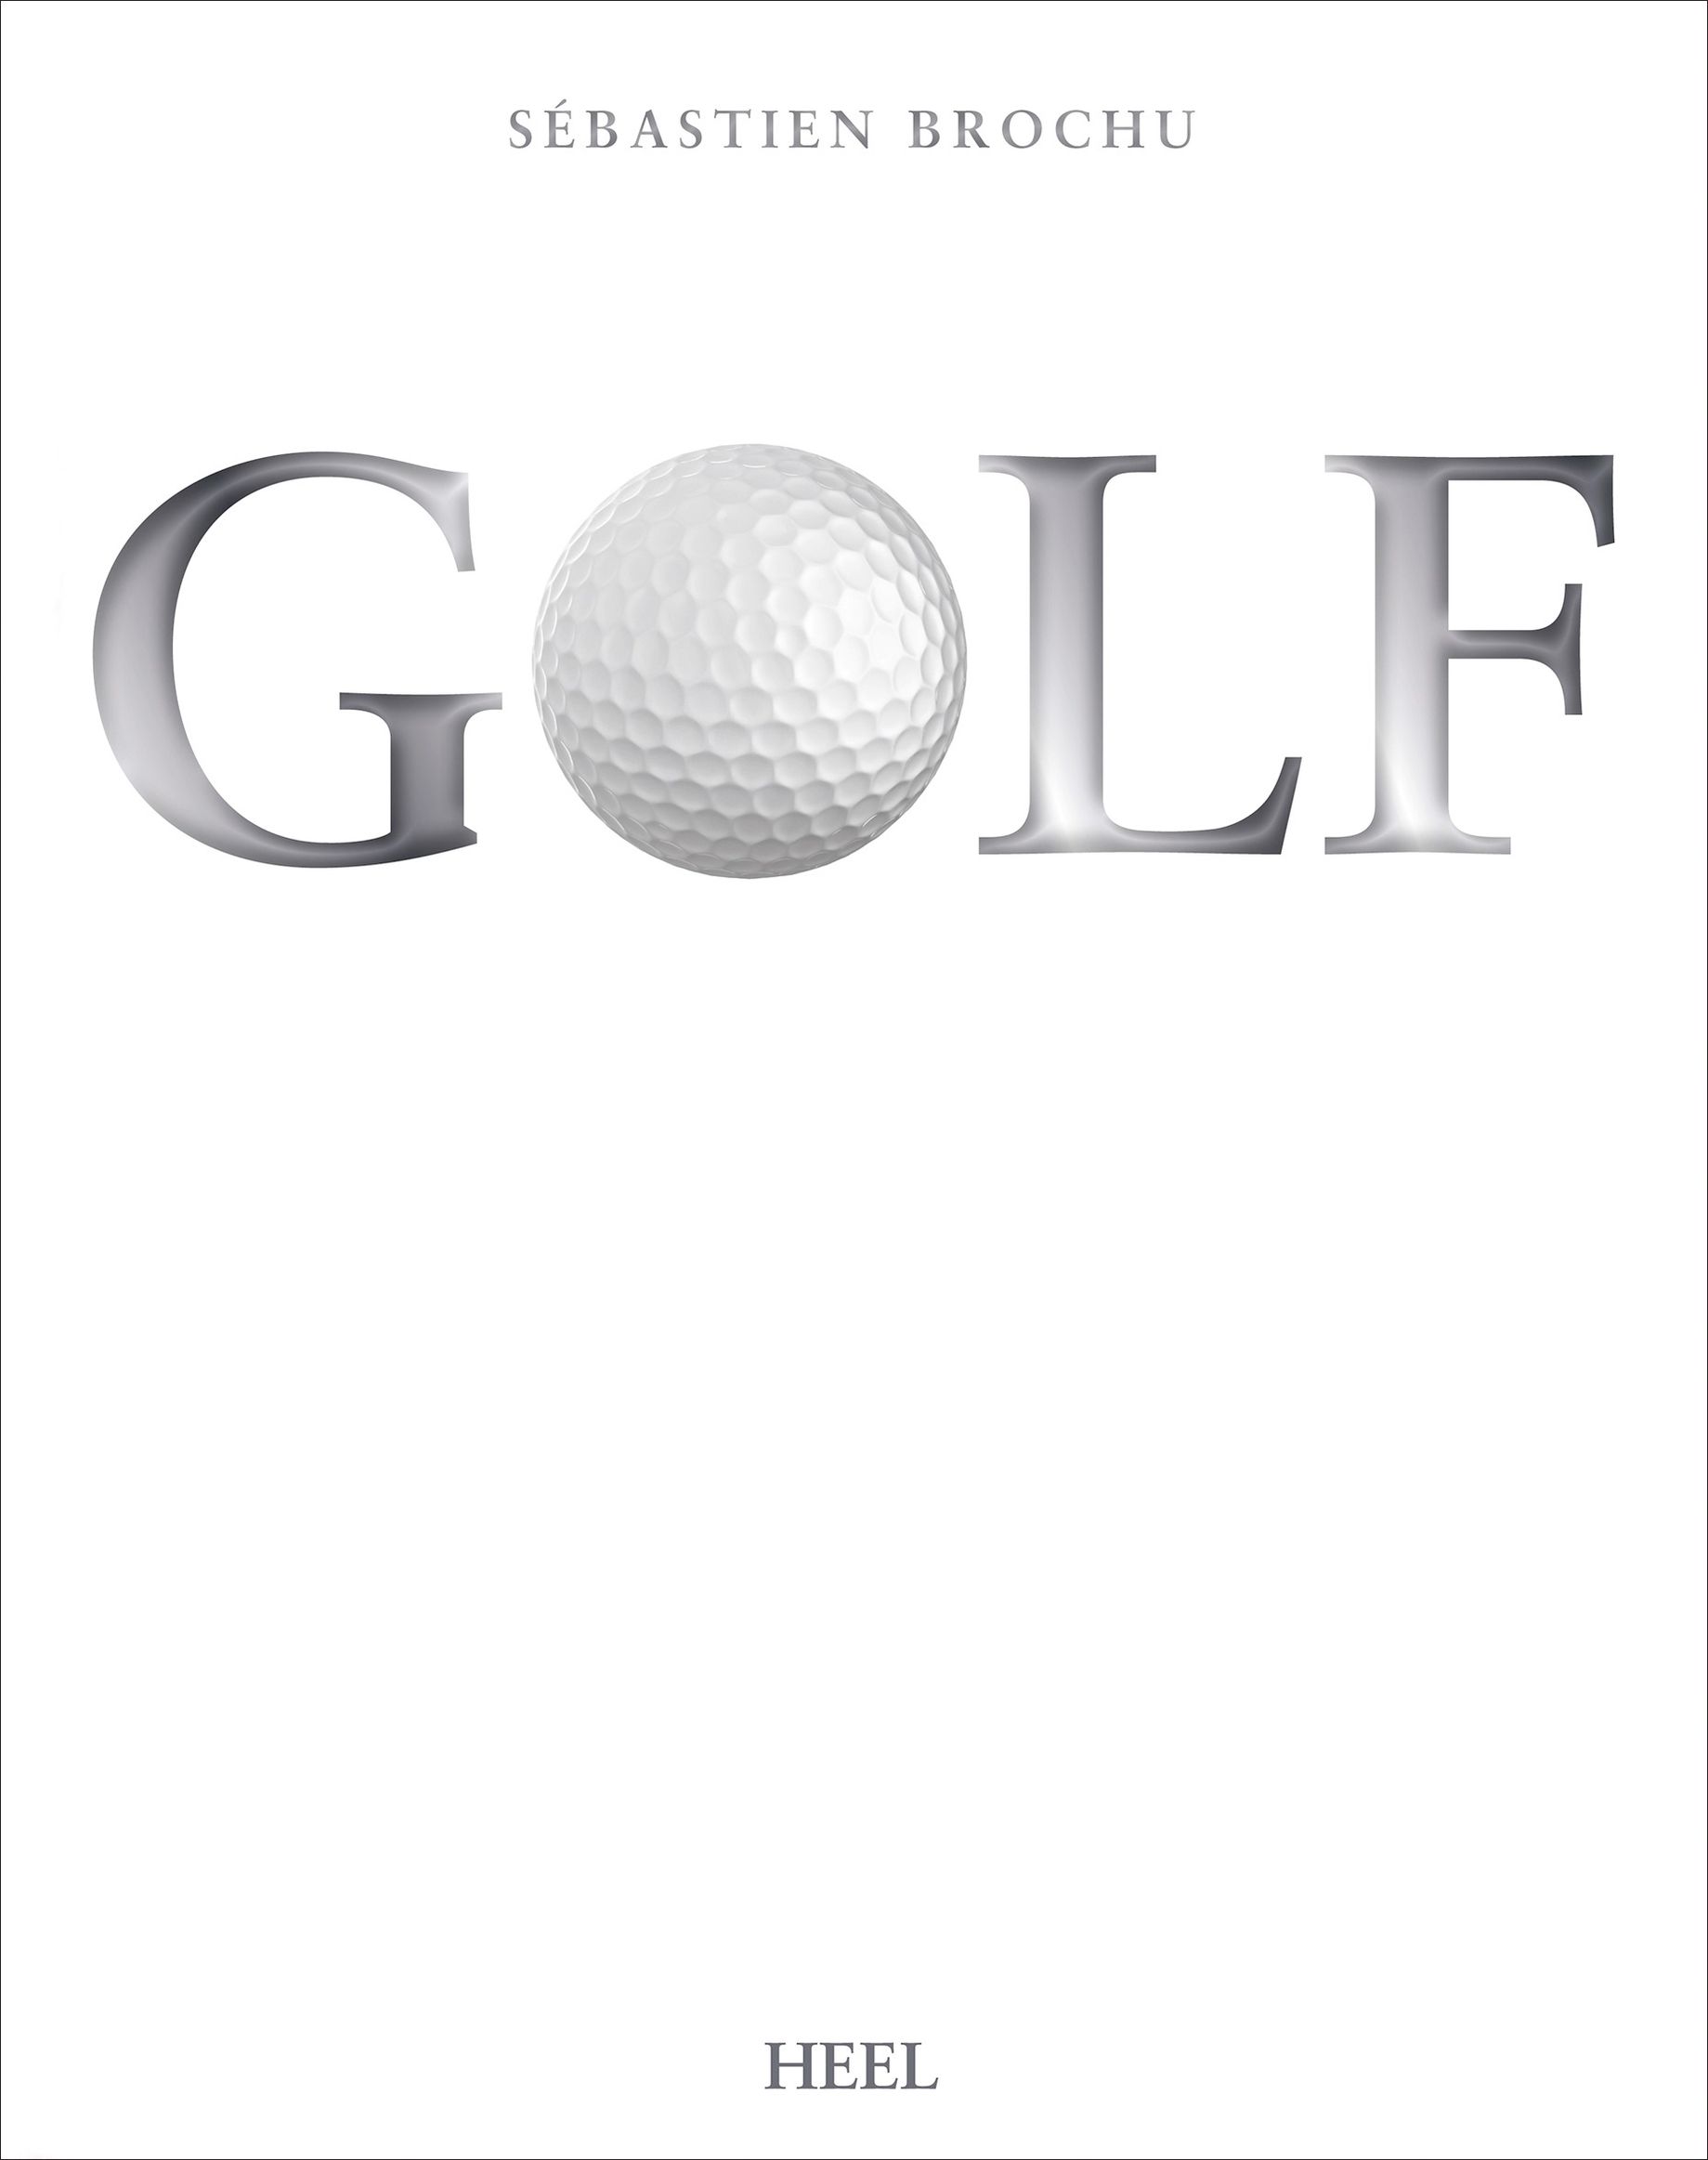 Golf Buch von Sébastien Brochu versandkostenfrei bestellen - Weltbild.ch